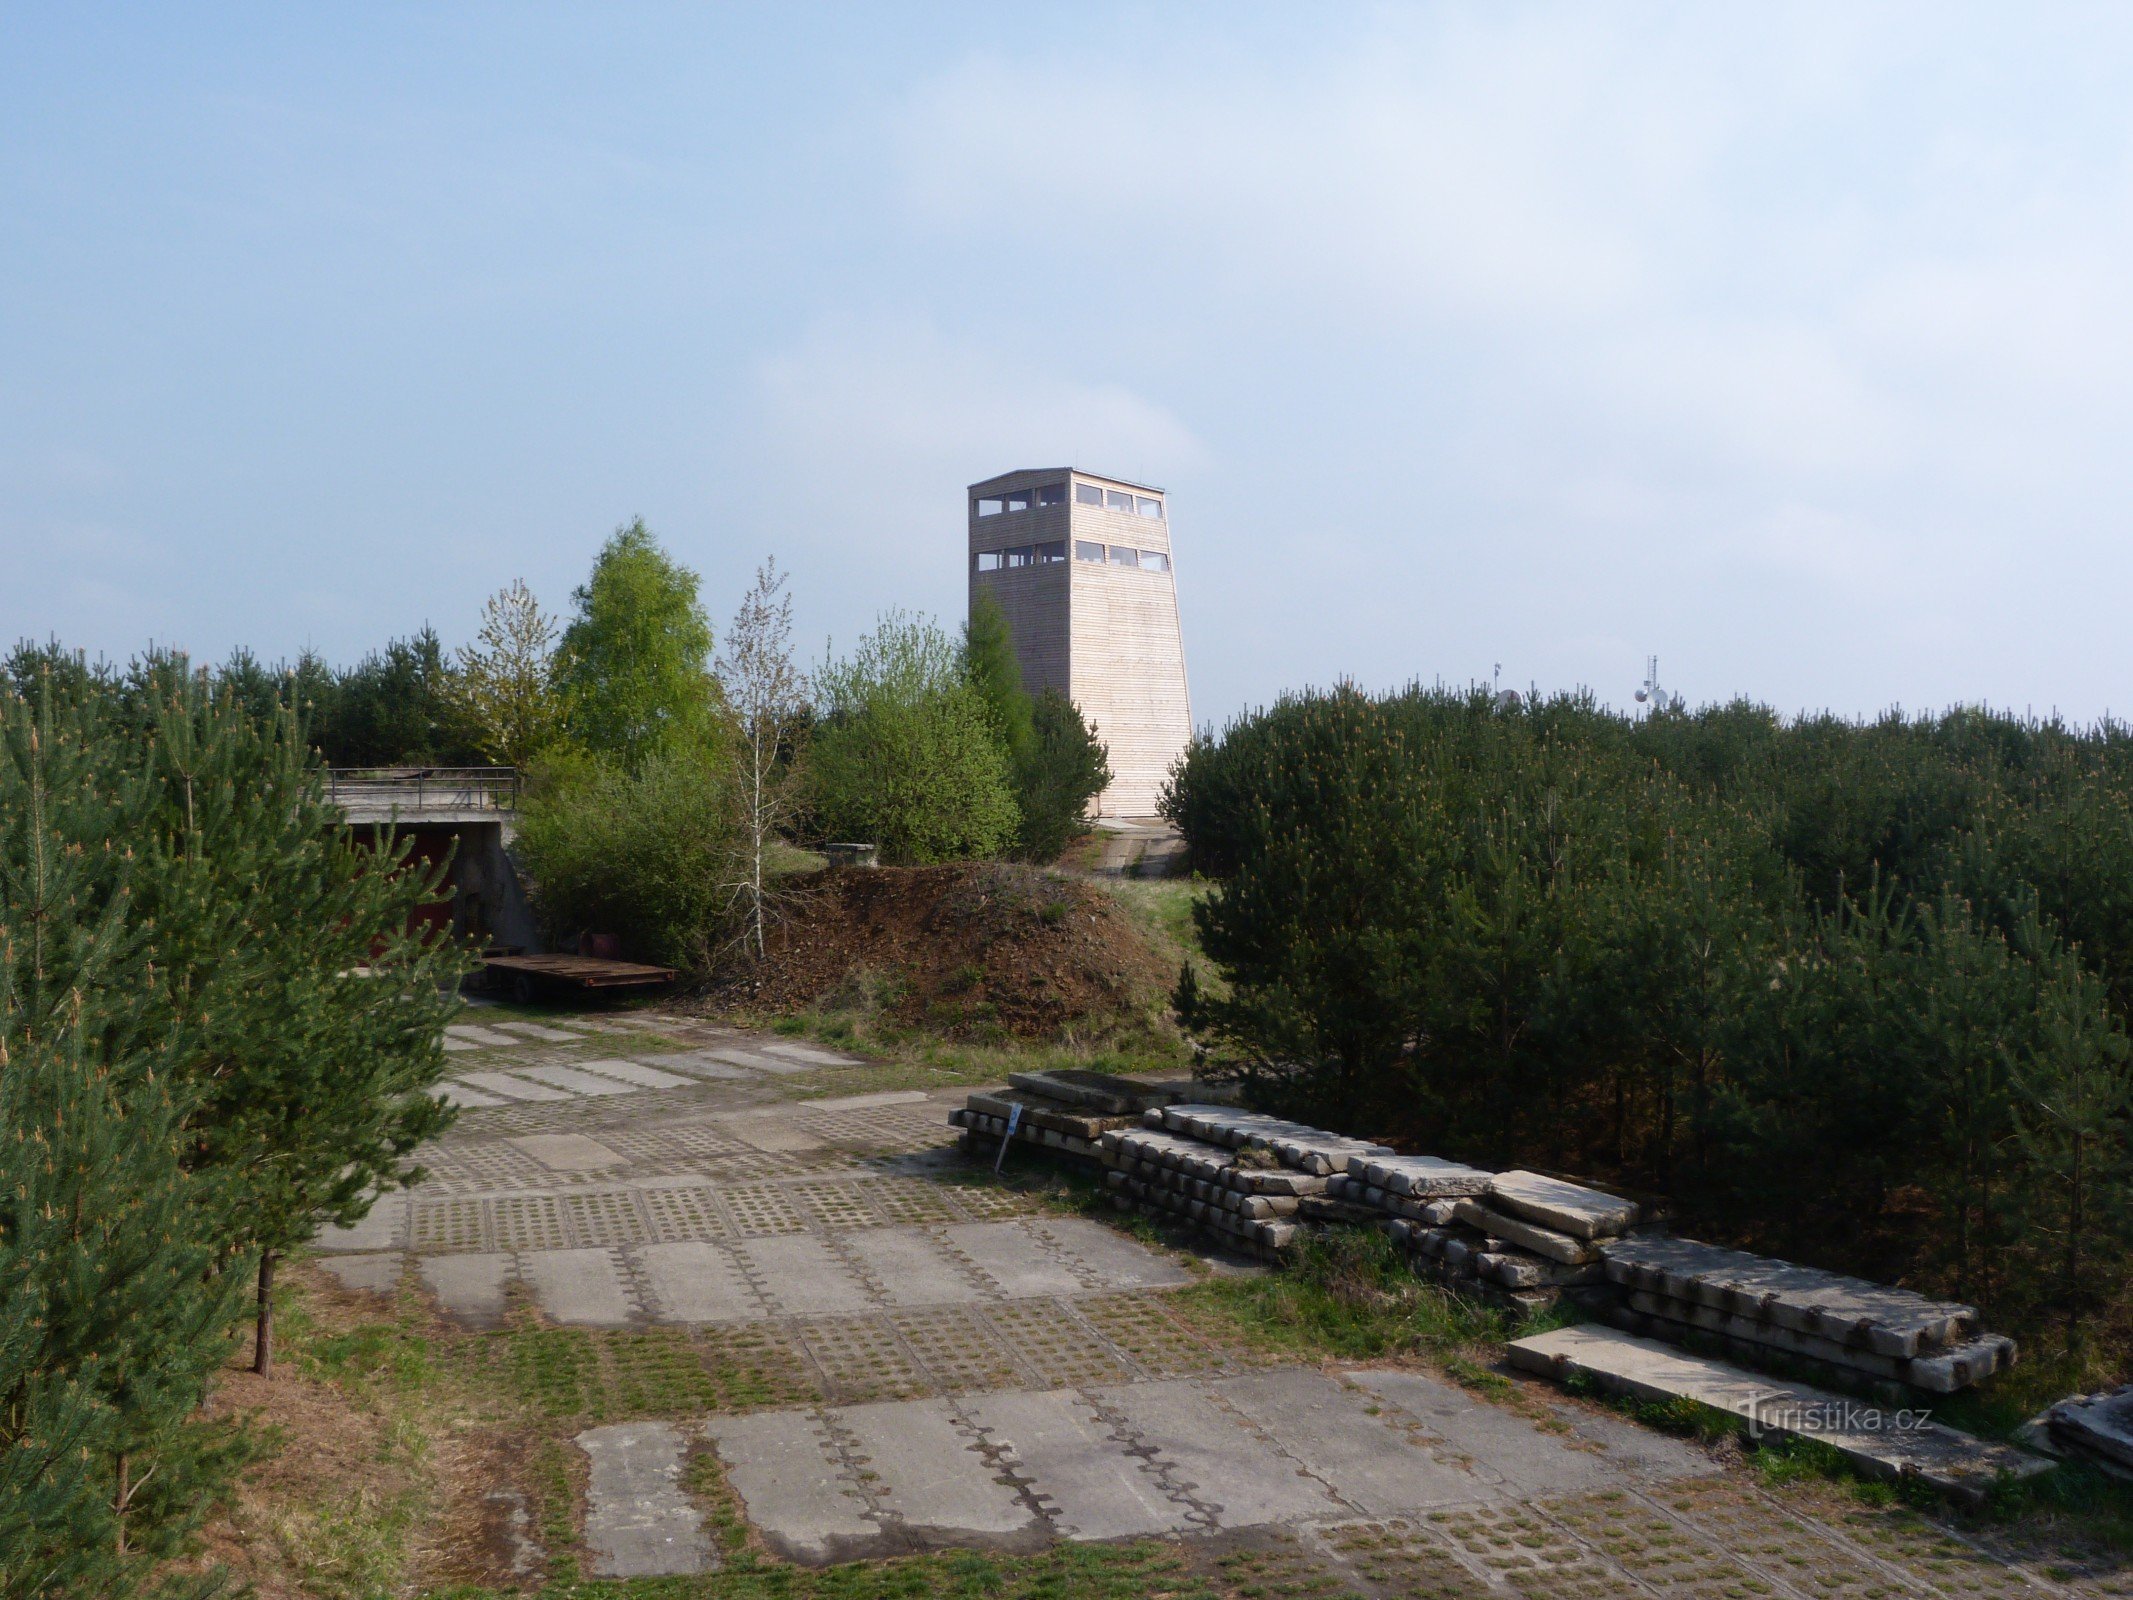 Lookout tower Na Vrších - Břasy